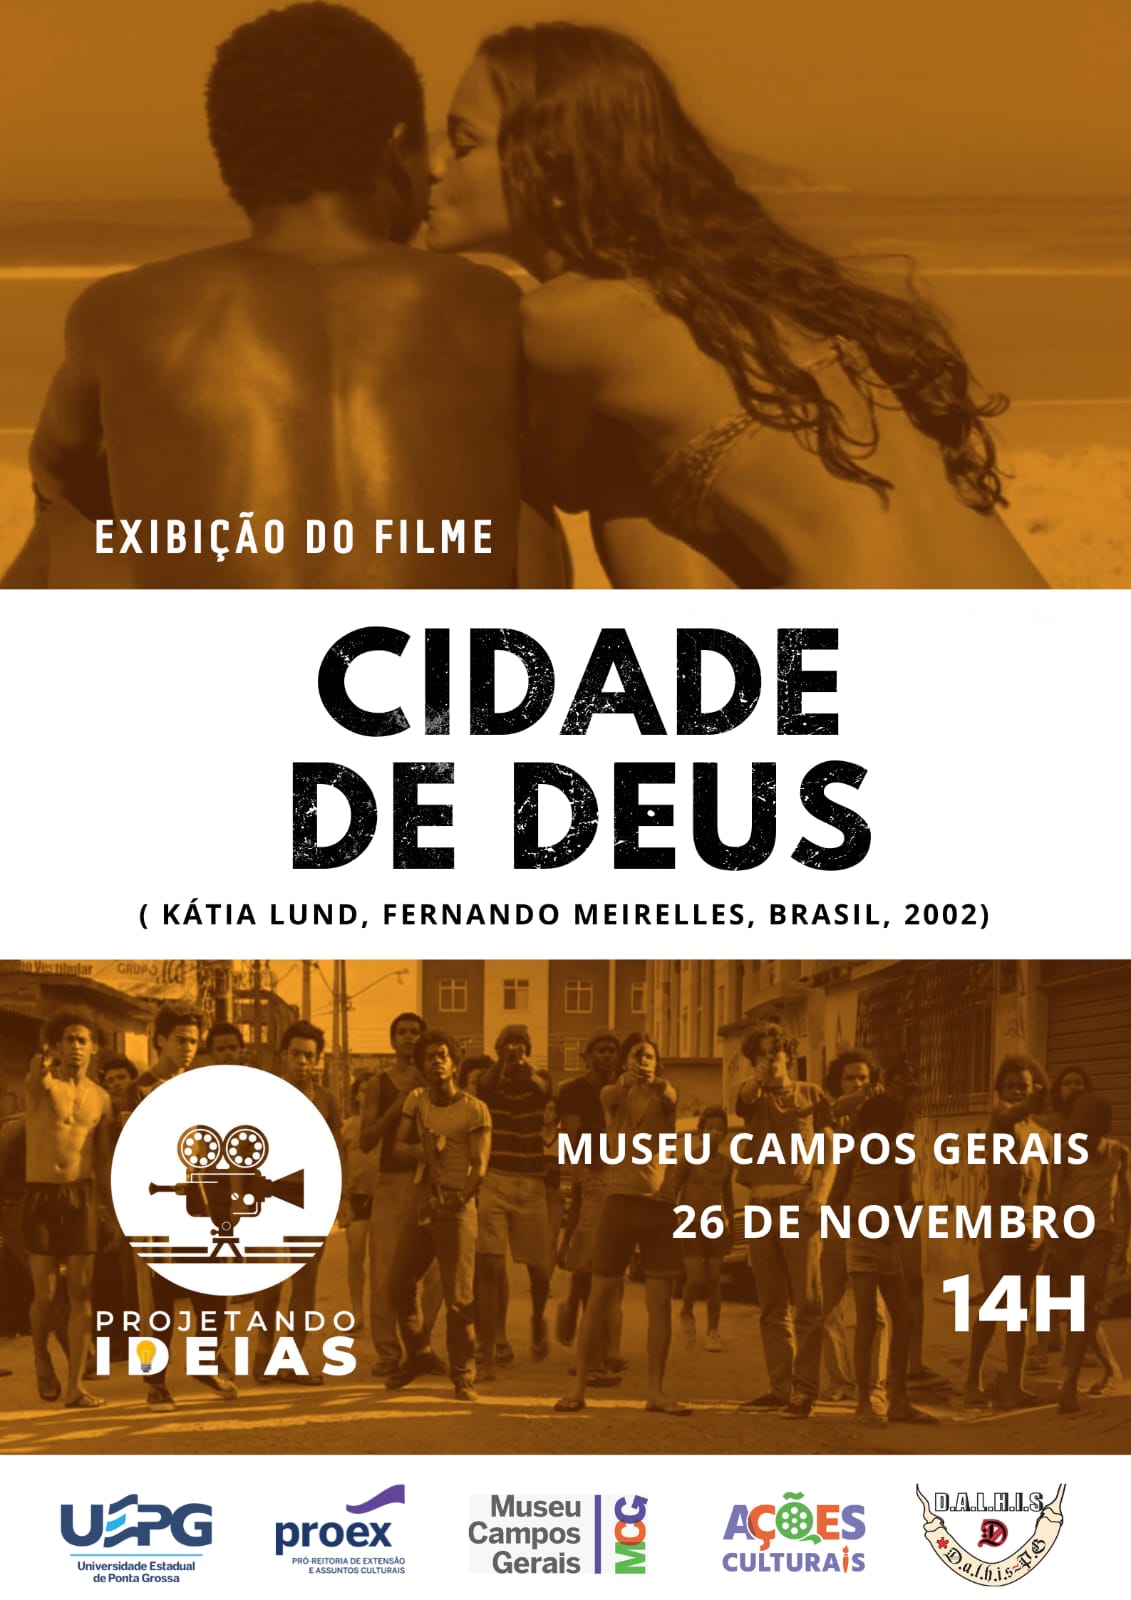 Cineclube Projetando Ideias exibe filme “Cidade de Deus” no MCG